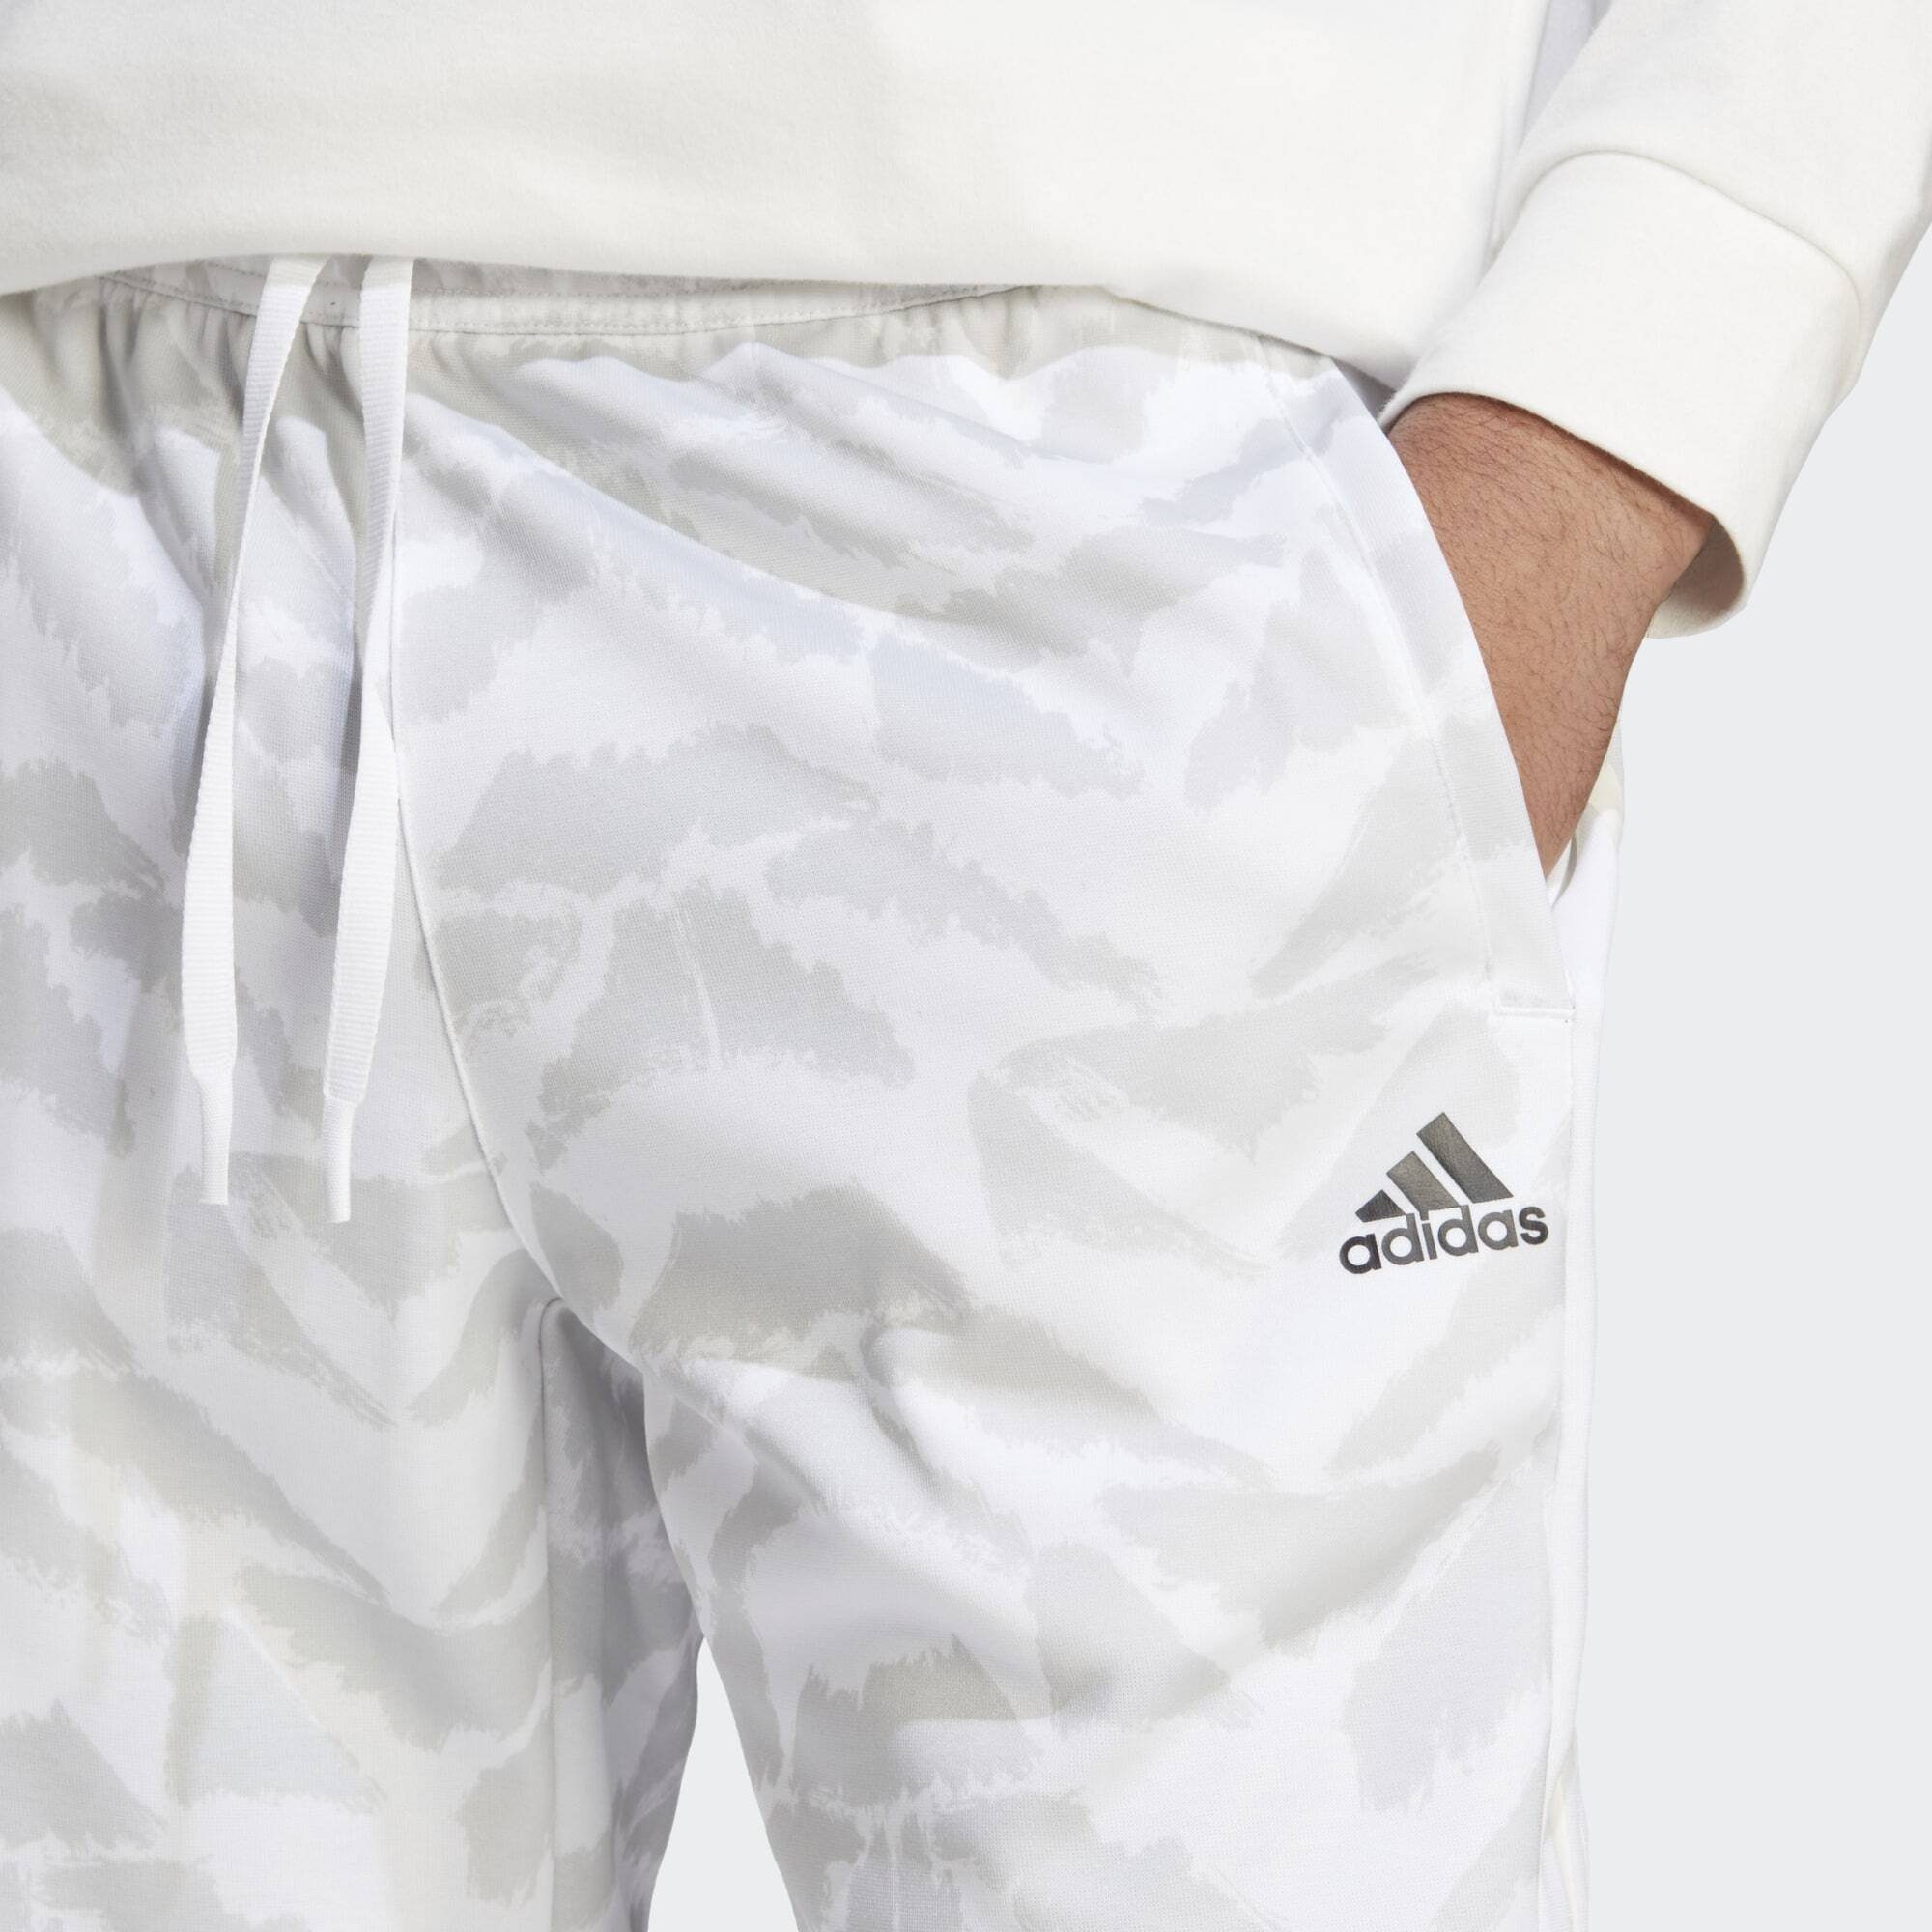 LIFESTYLE SUIT-UP adidas Leichtathletik-Hose TRAININGSHOSE TIRO White Sportswear